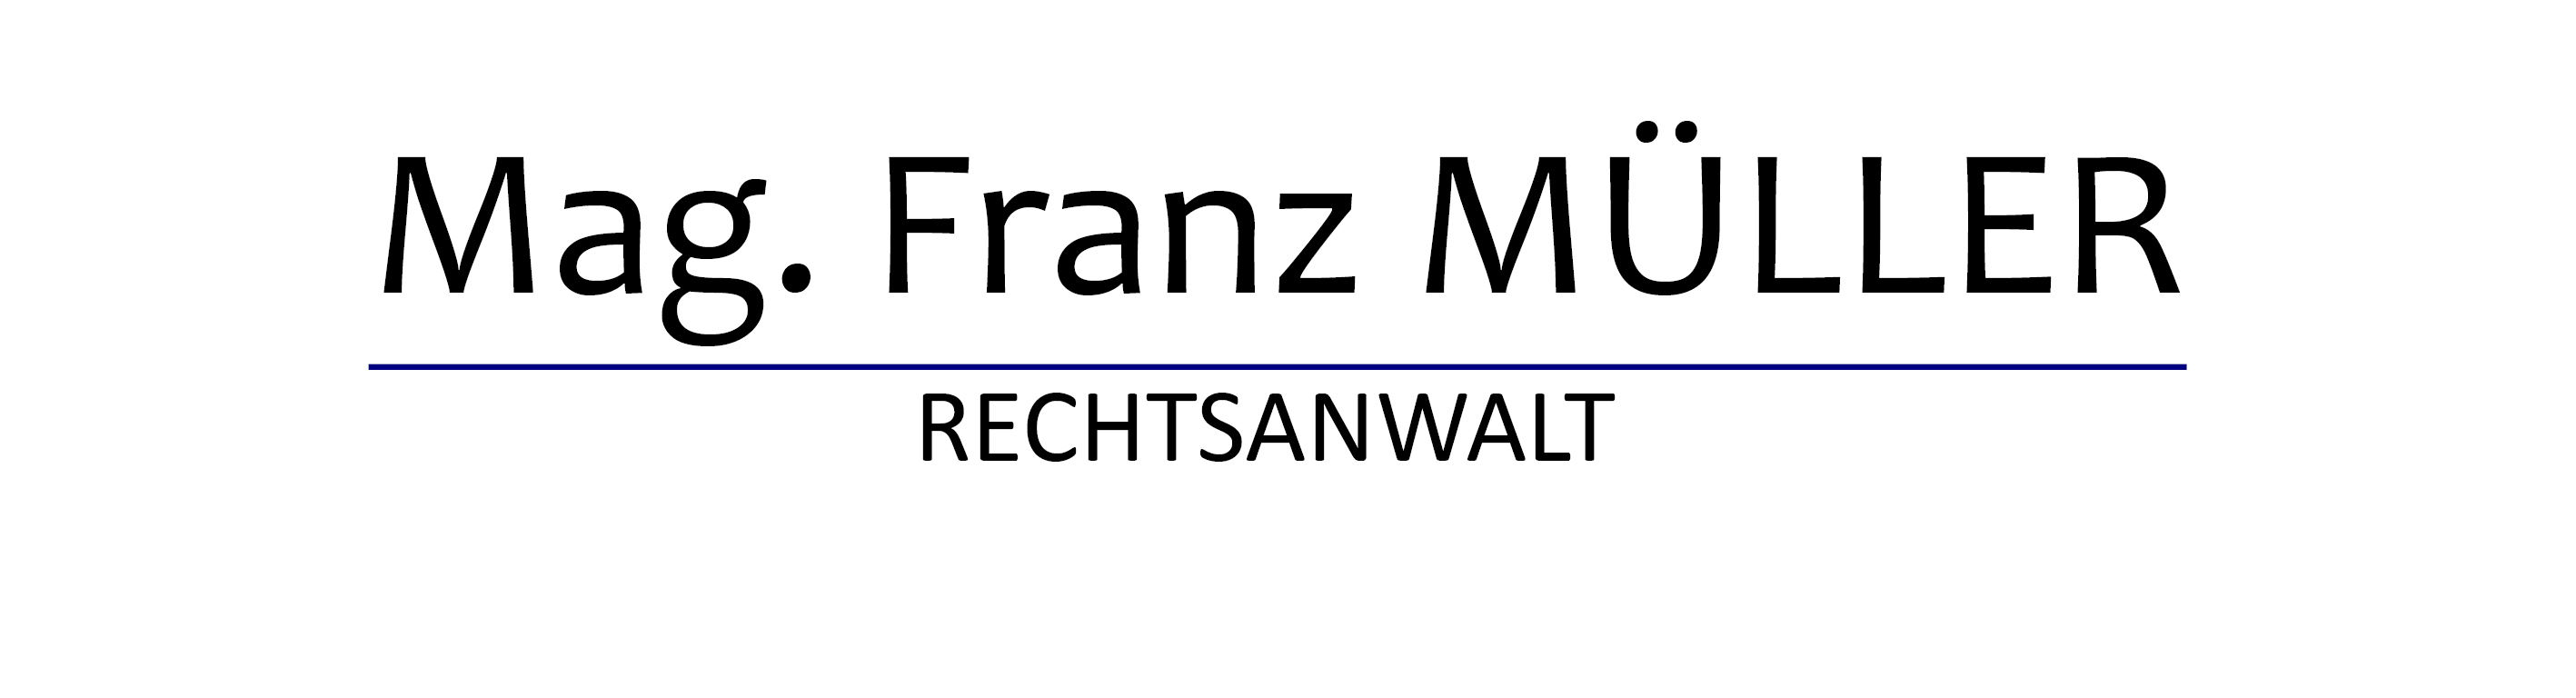 Mag. Franz Müller Rechtsanwalt